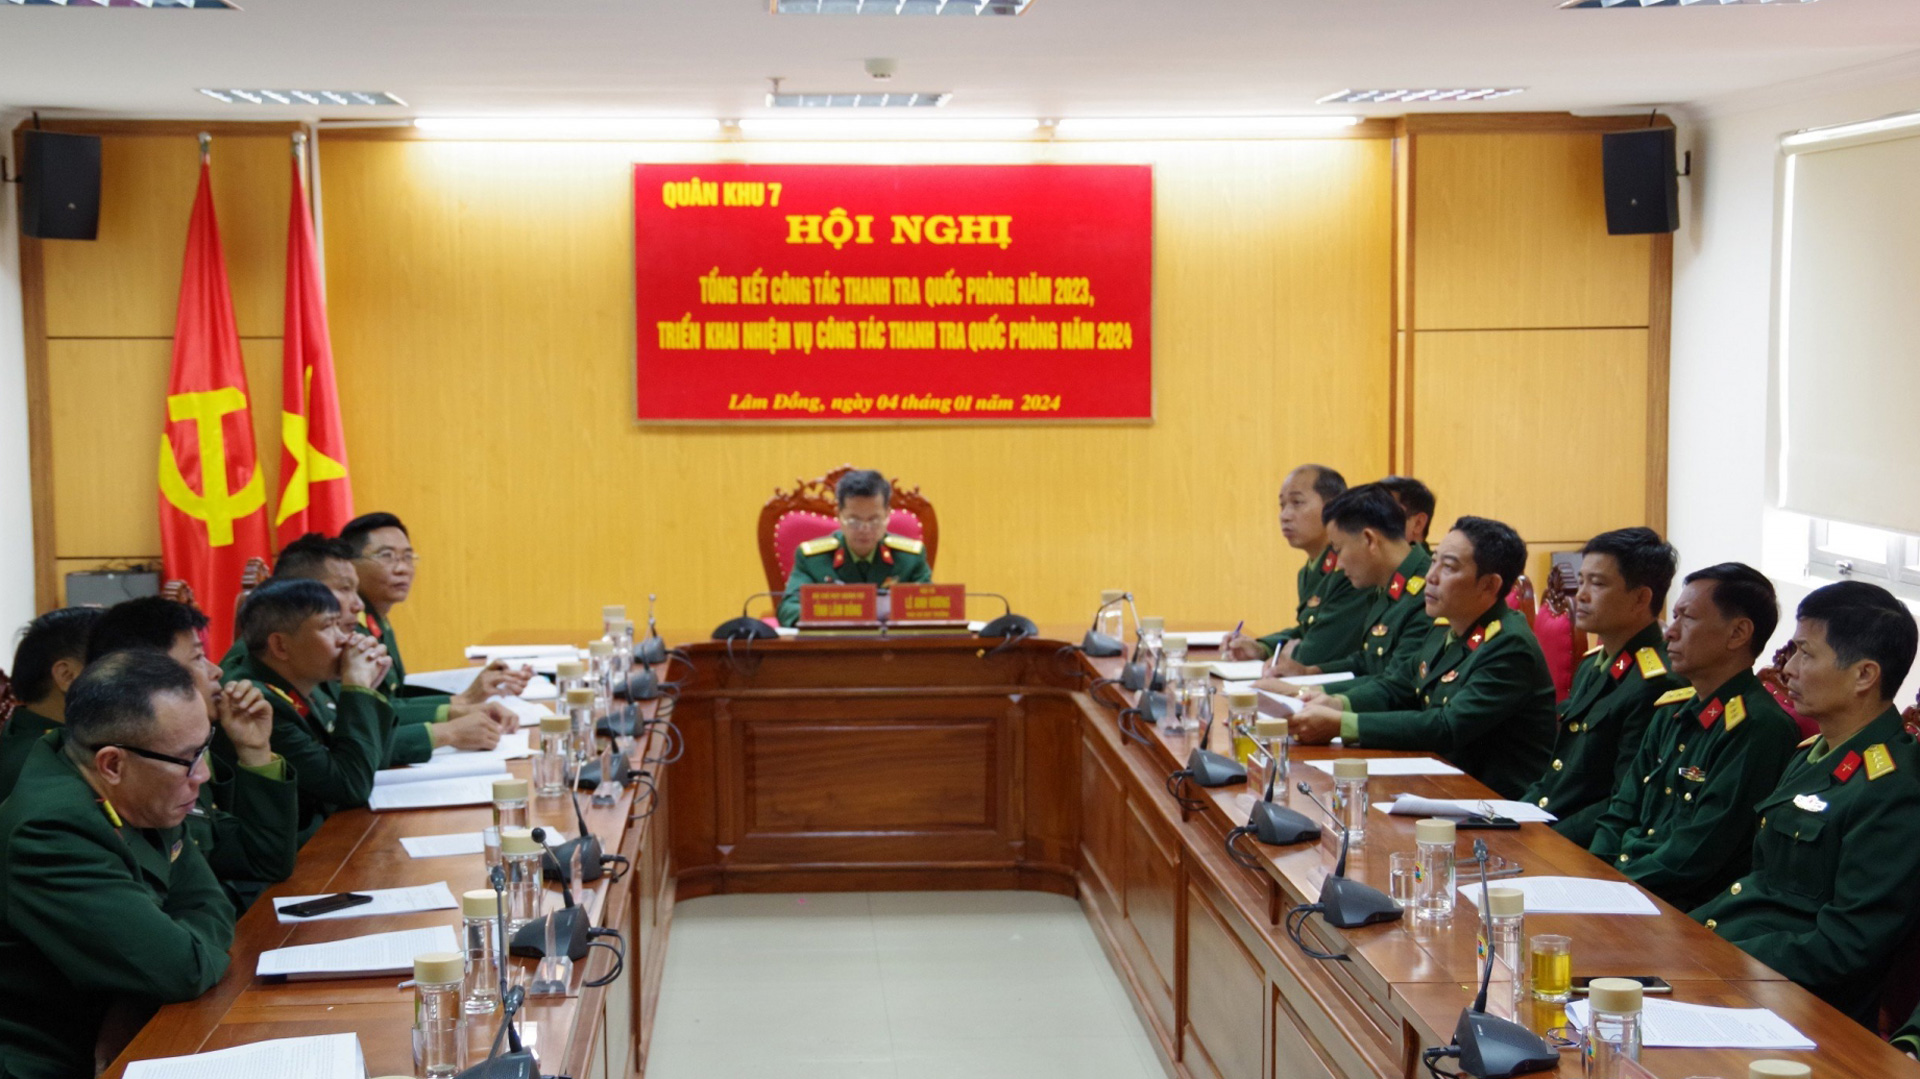 Đại tá Lê Anh Vương chủ trì hội nghị tại điểm cầu Bộ CHQS tỉnh Lâm Đồng